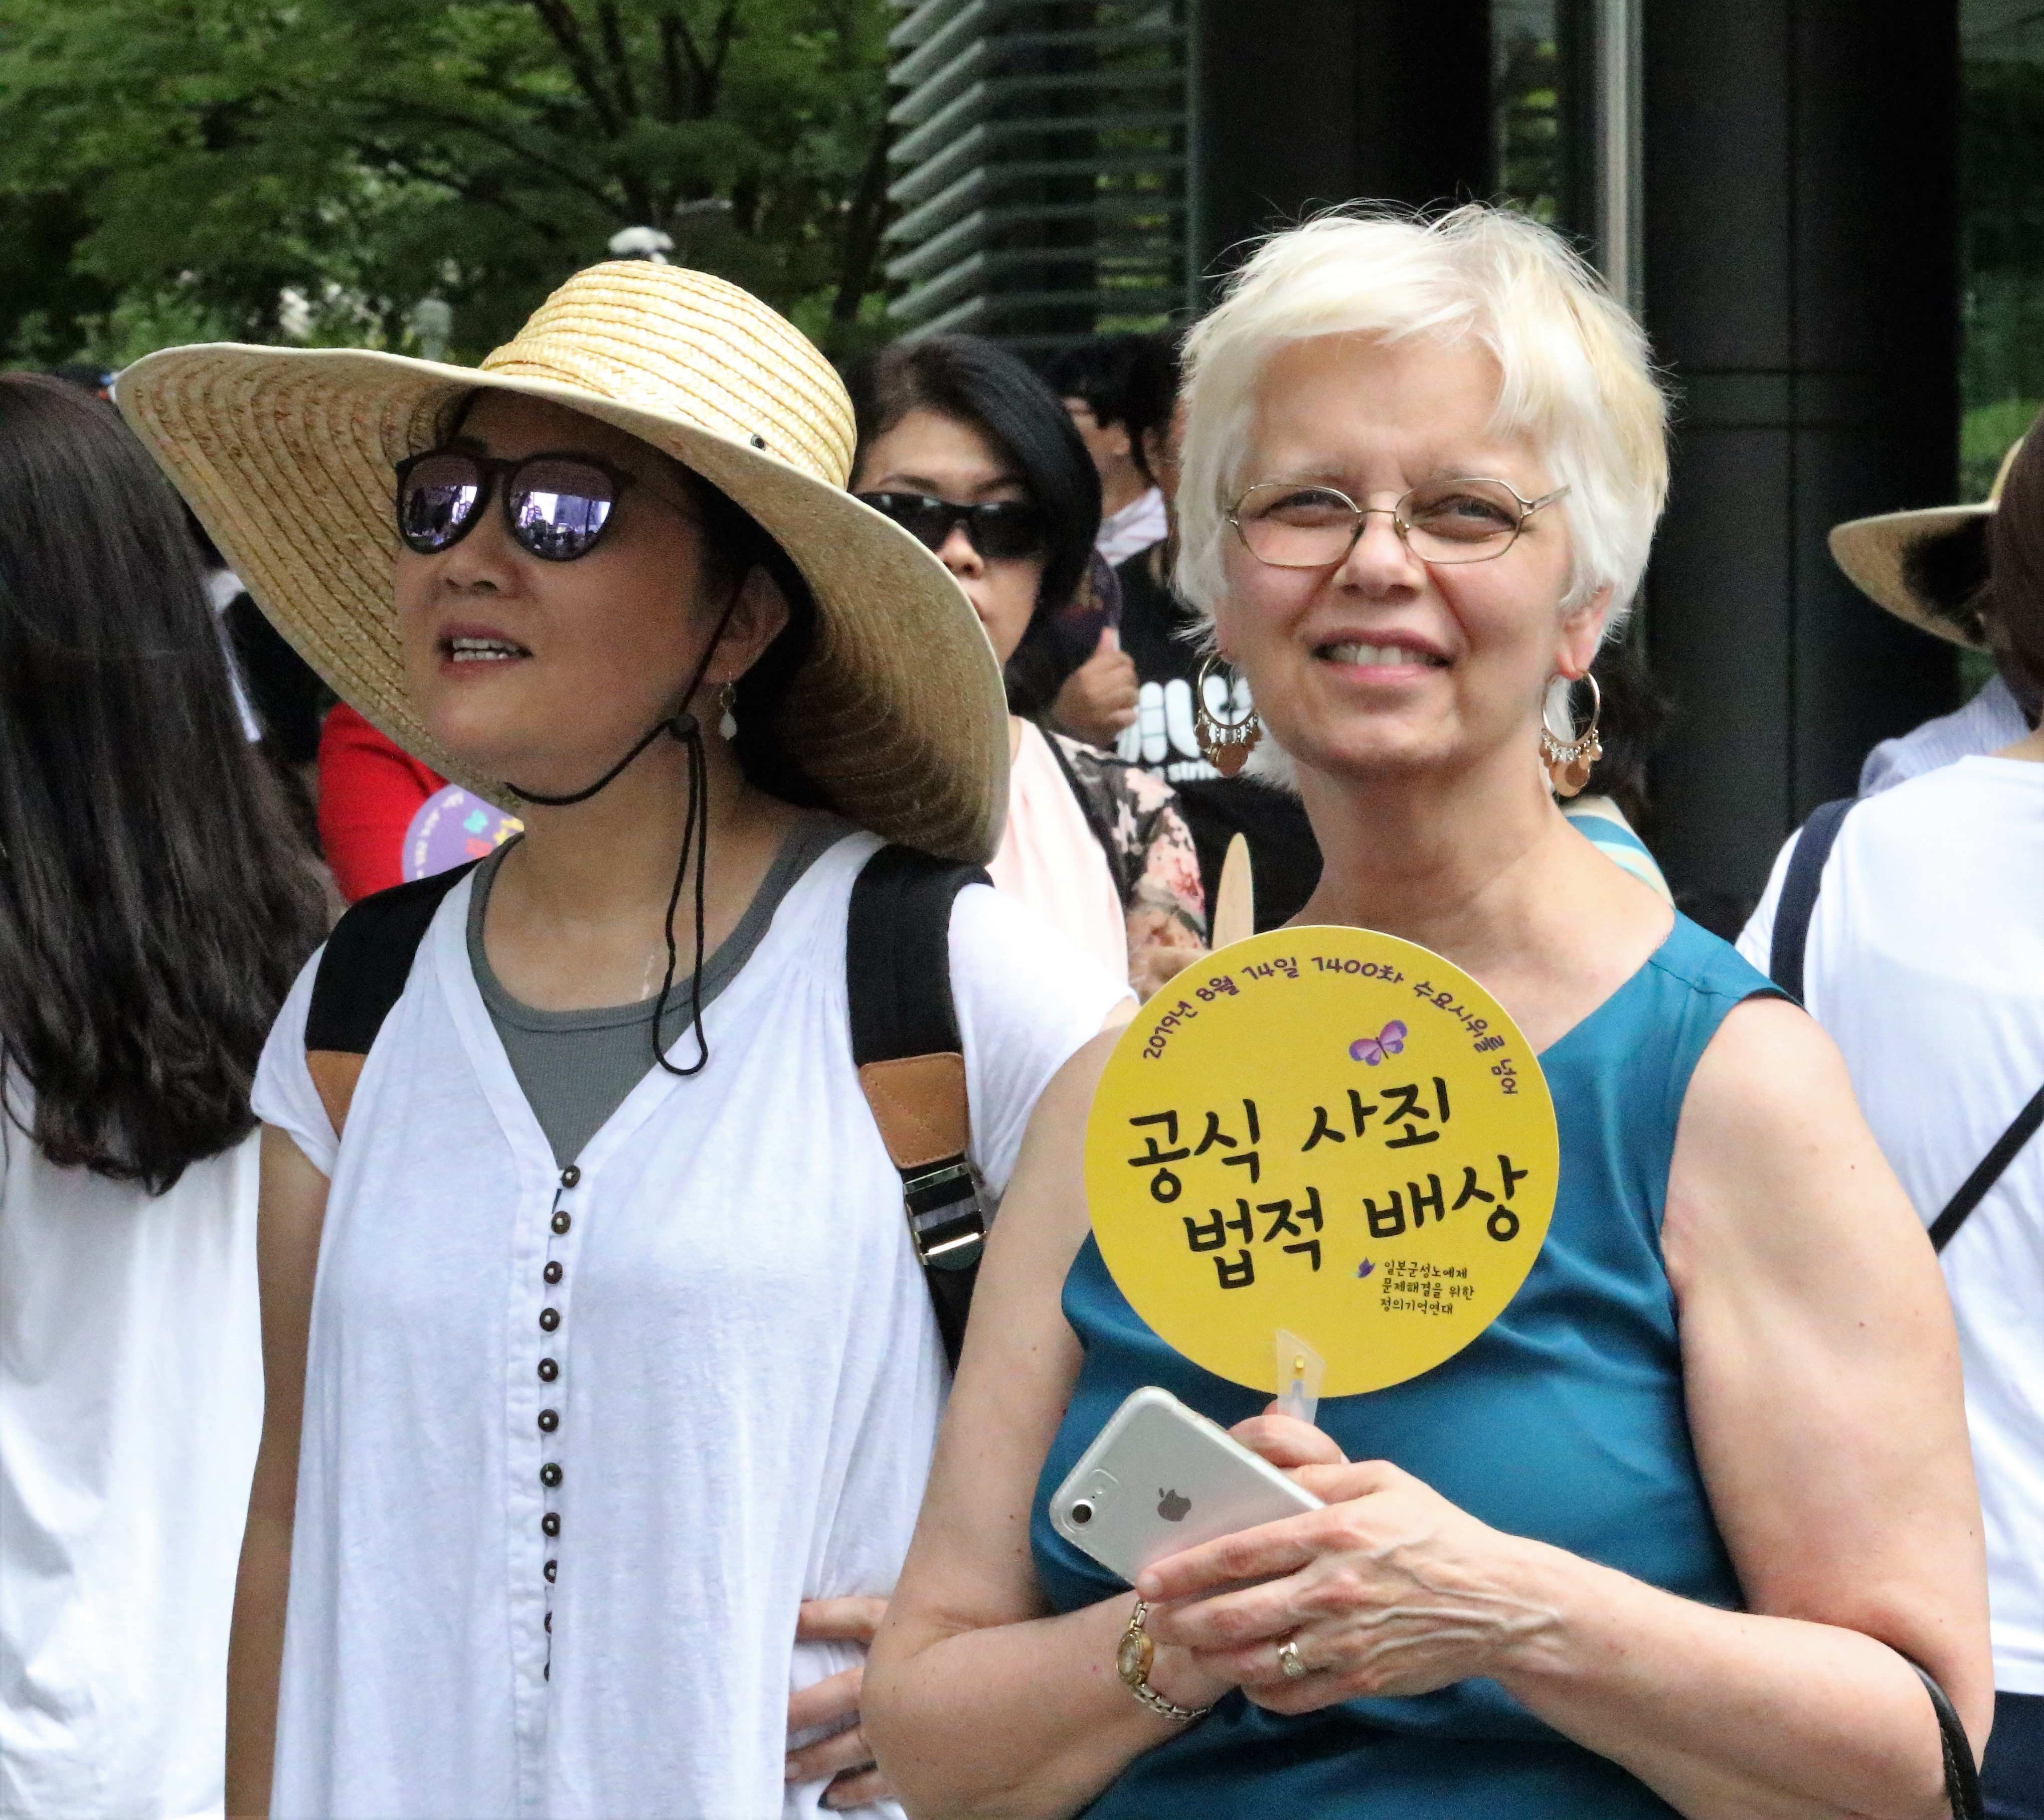 아프리카와 아시아 여성 신학자 컨퍼런스에 참석한 사람들은  8월 14일 일본 대사관 앞에서 열린 일본 제국주의의 한국 강점기에 일본에 의해 위안부로 끌려가 성노예로 희생당한 여성들을 기억하며 연대하는 1,400차 시위 및 제7차 세계일본군위안부기림일 행사에 참석했다. 사진 김응선 목사, 연합감리교뉴스.) 